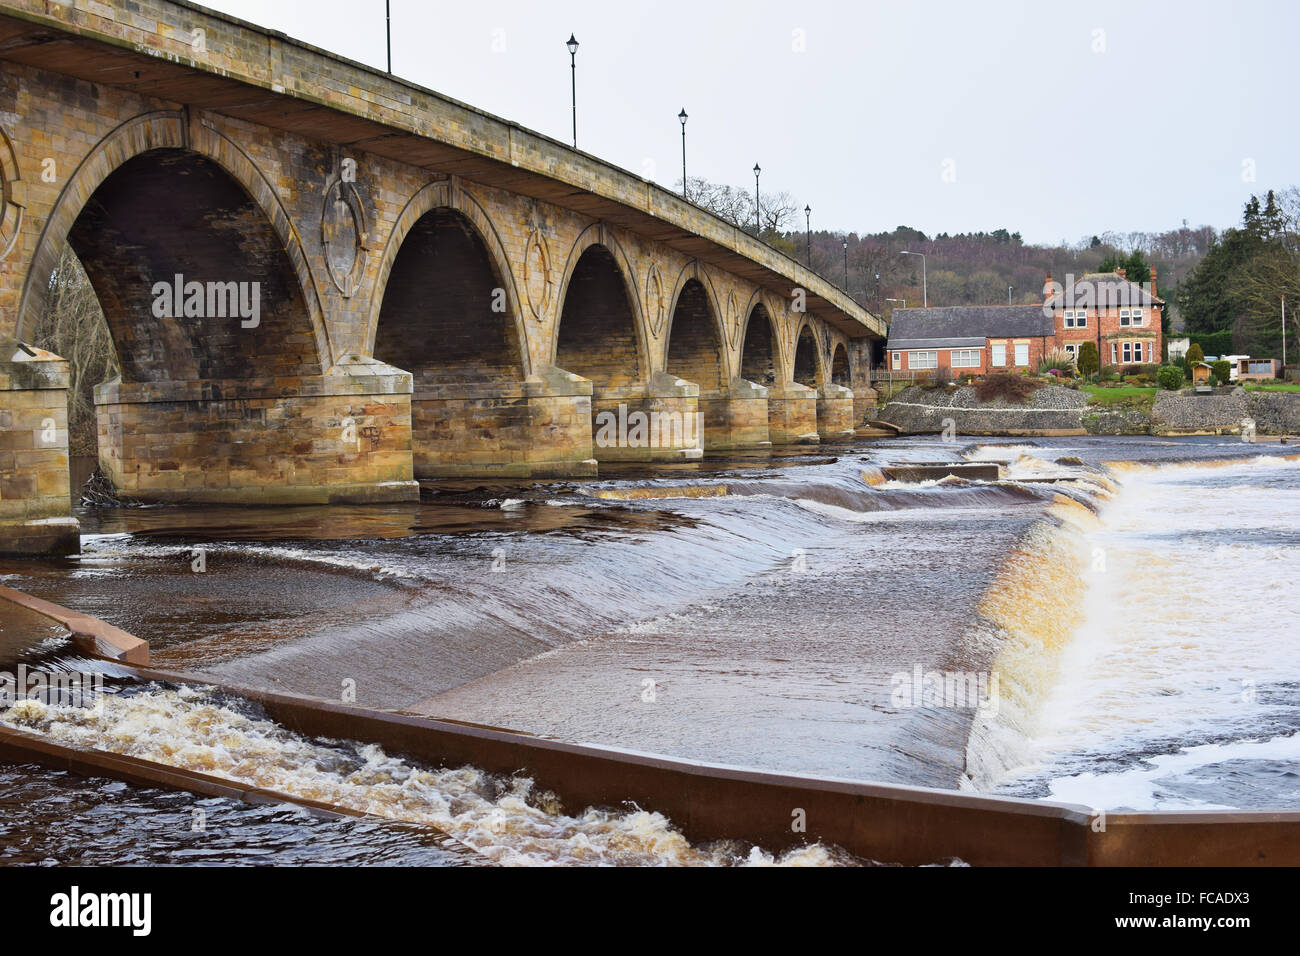 Hexham Bridge, crossing the River Tyne, Hexham, Northumberland, UK Stock Photo